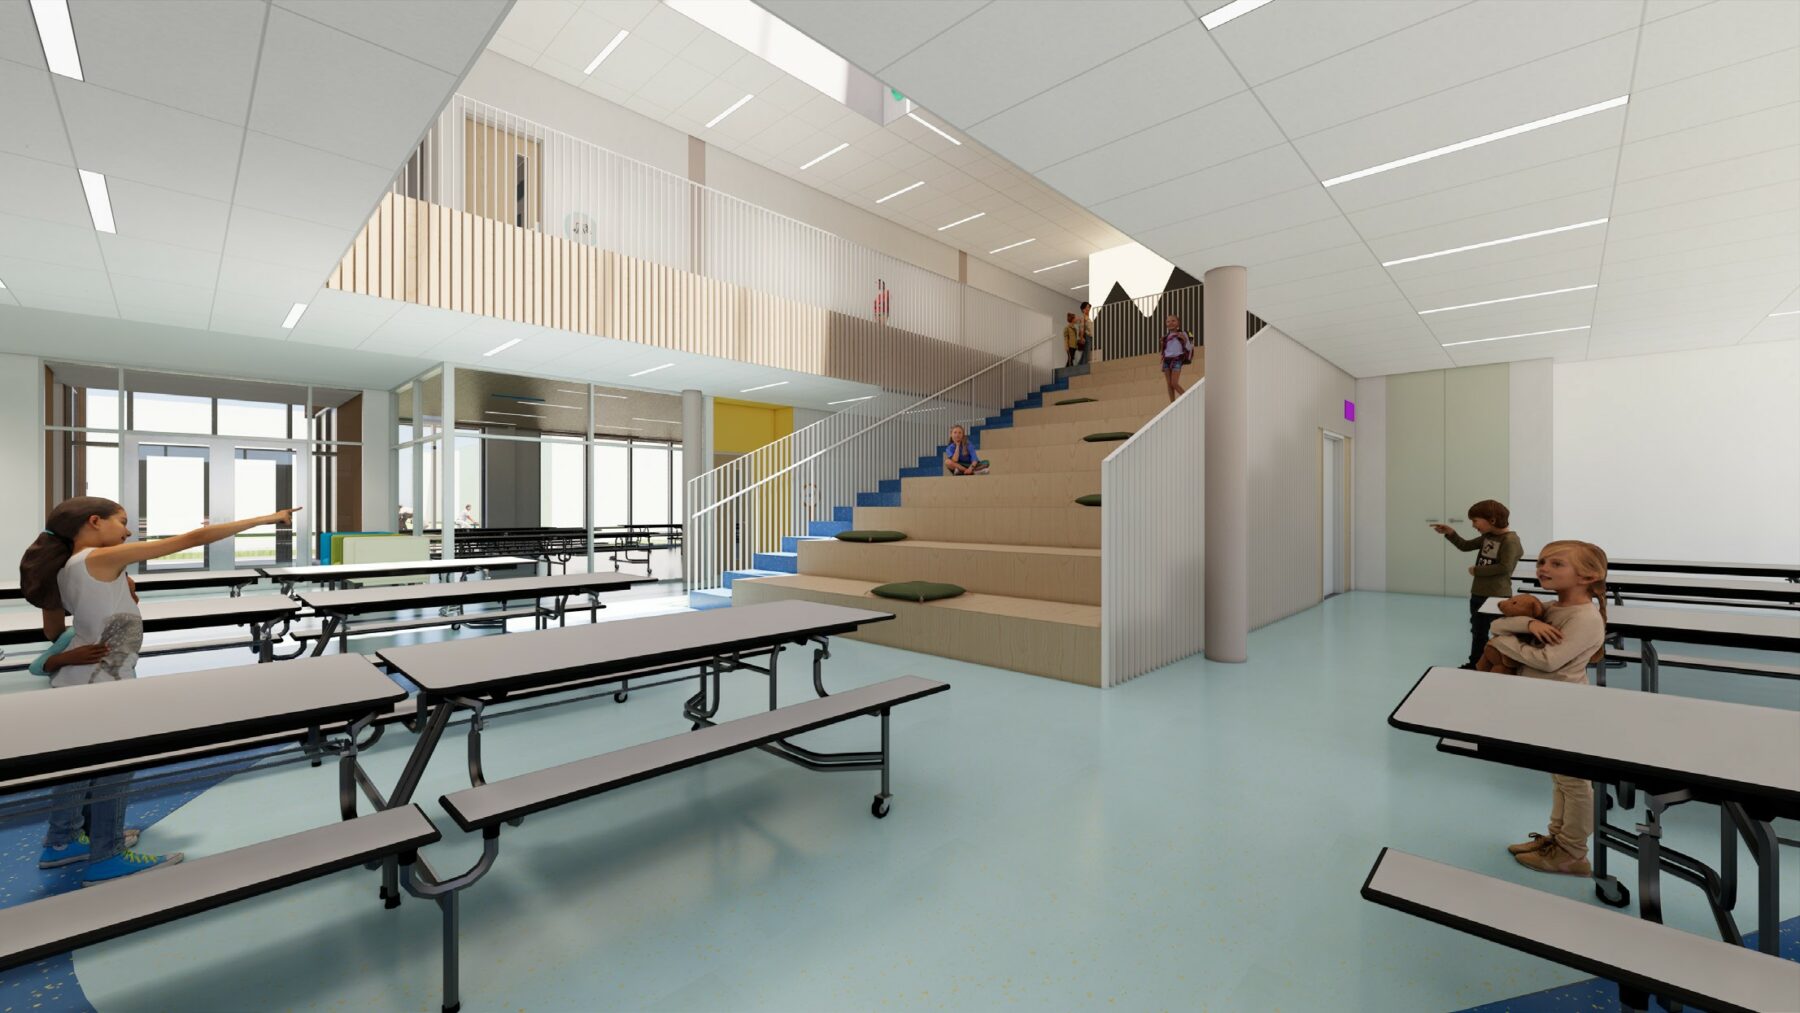 interieur-atrium-plancher-scaled(1)